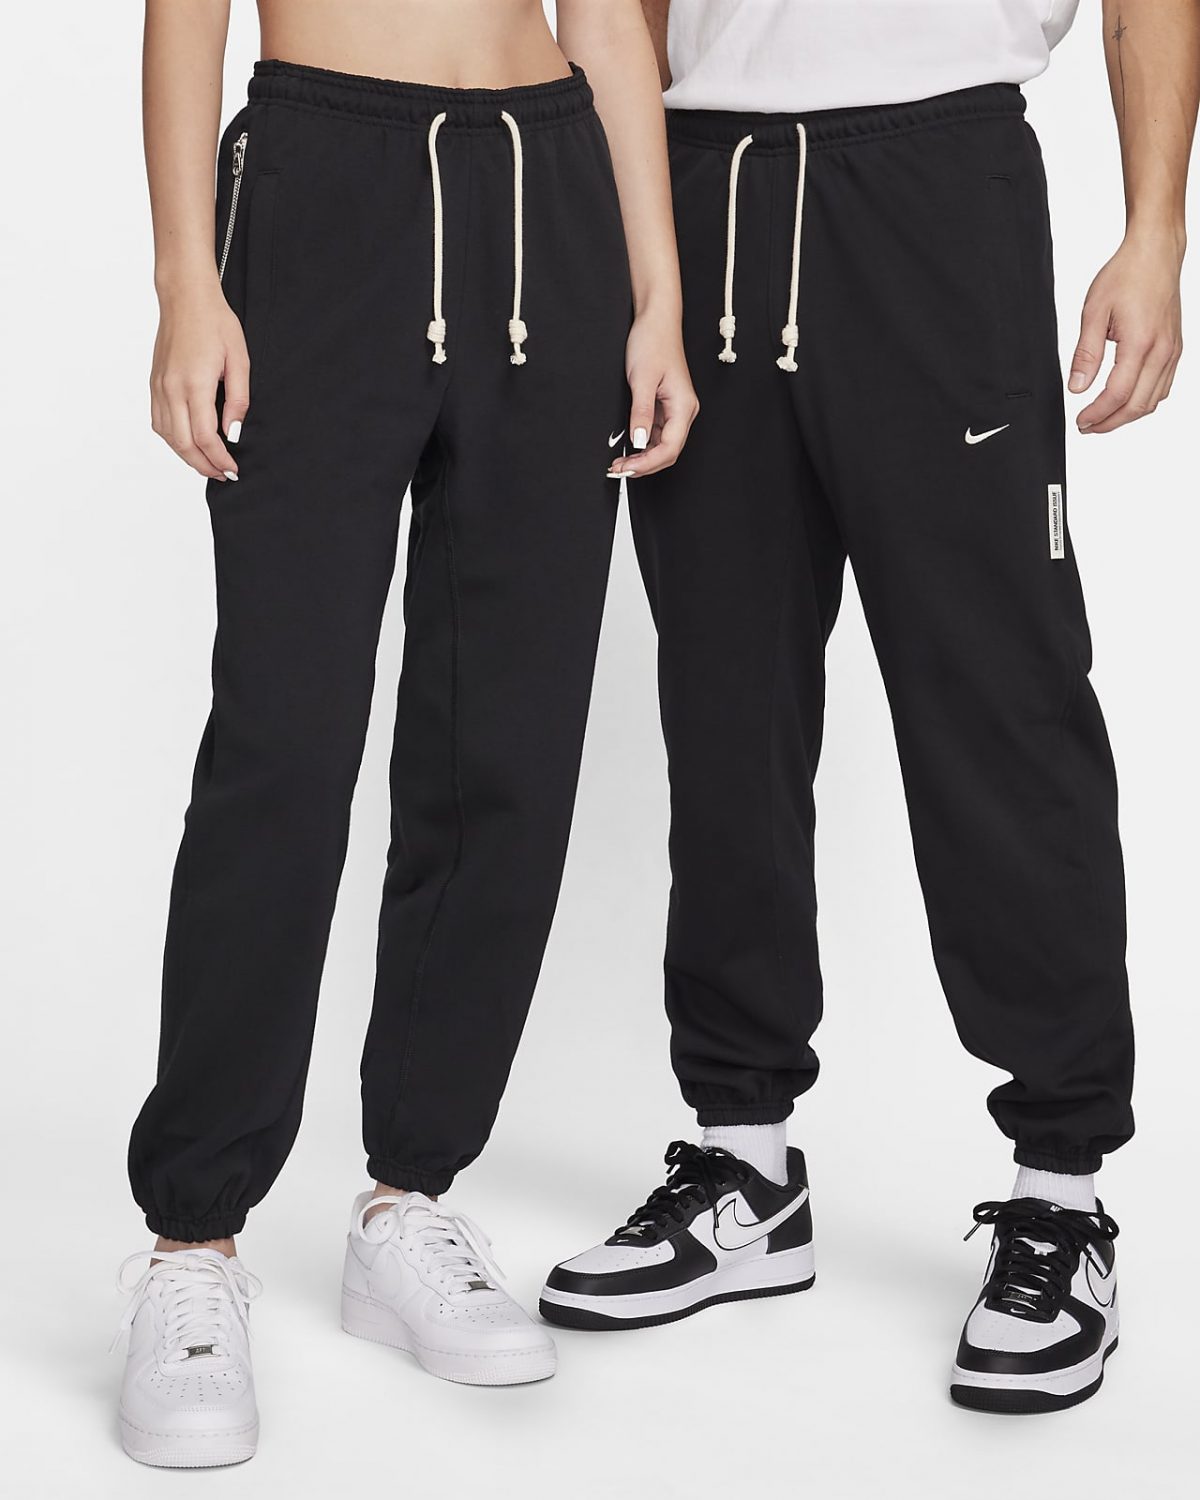 Мужские брюки Nike Dri-FIT Standard Issue фото